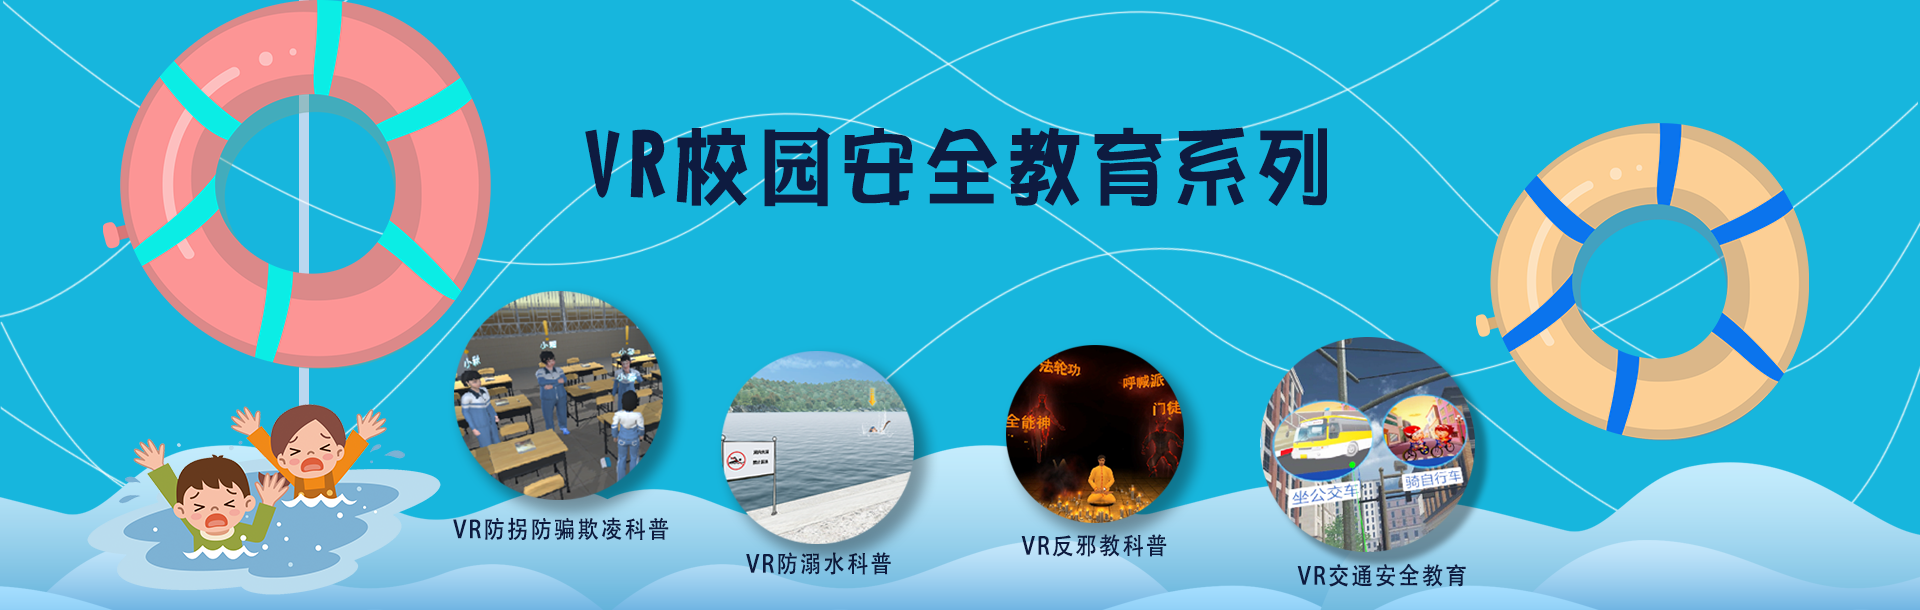 广州VR全景在线虚拟展示如何加强安全教育